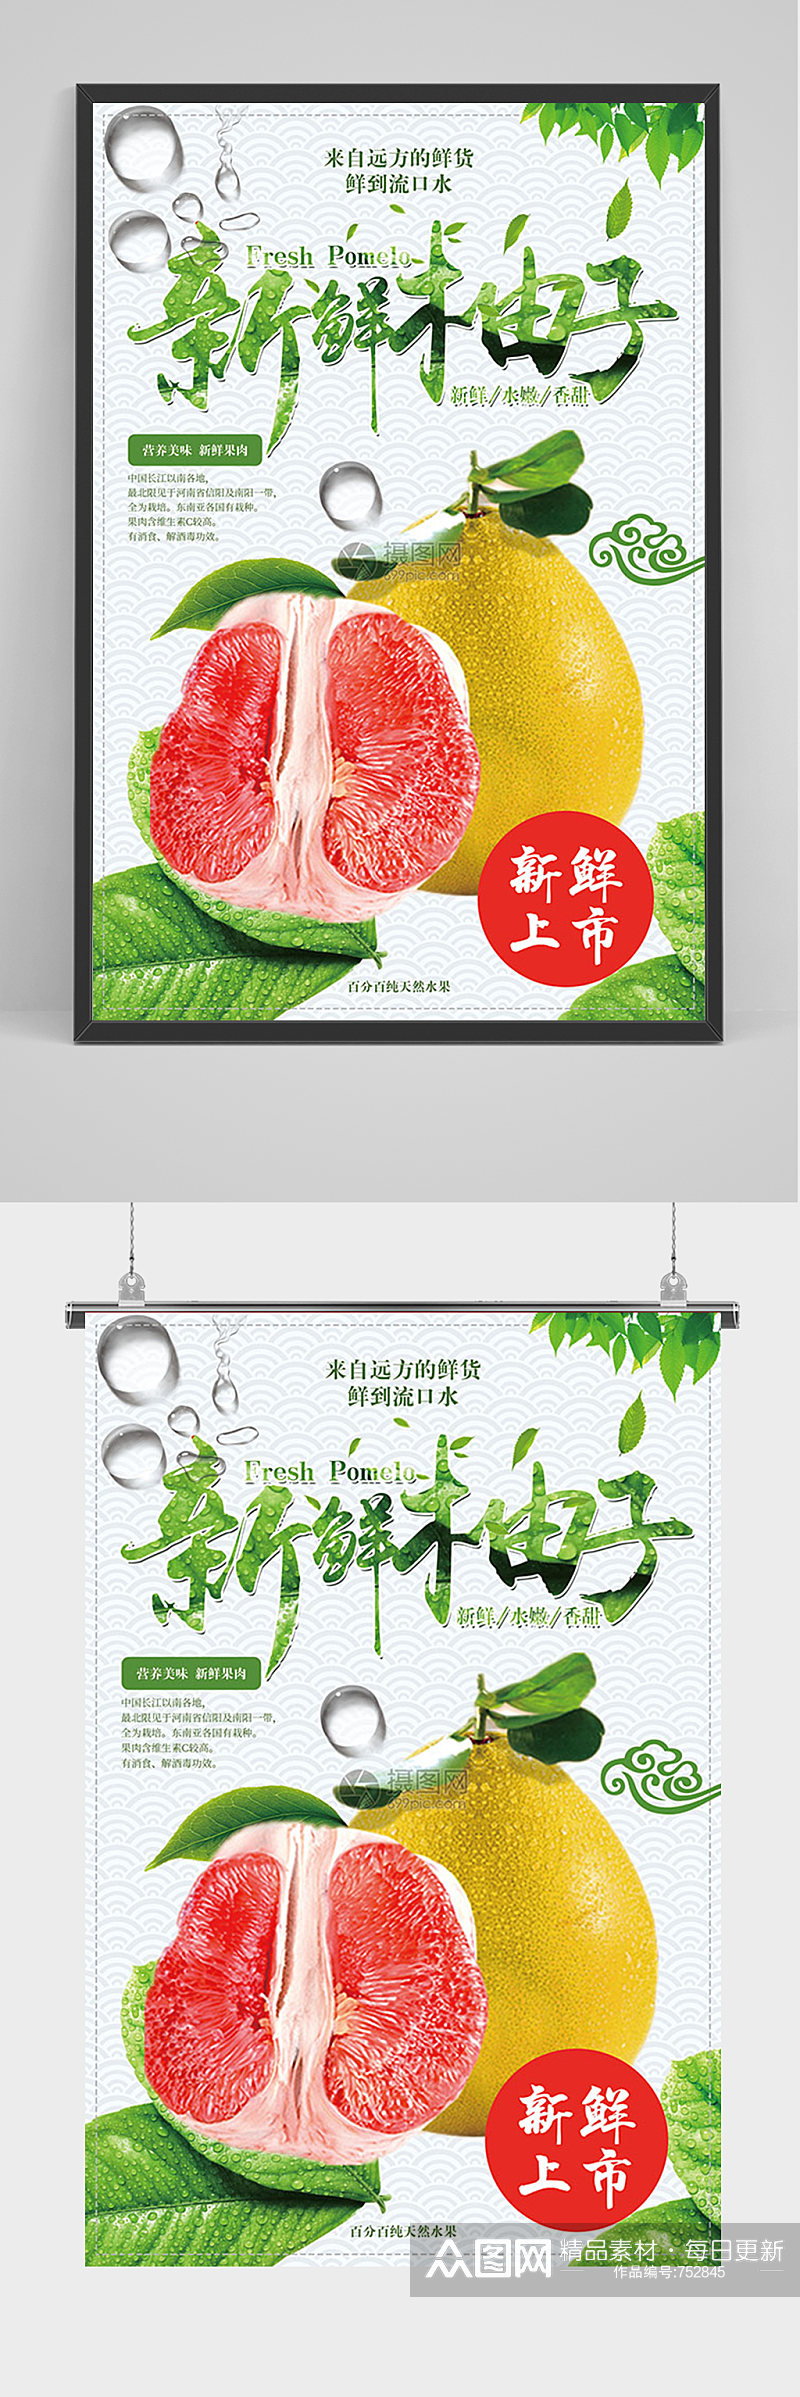 简约新鲜柚子促销海报素材